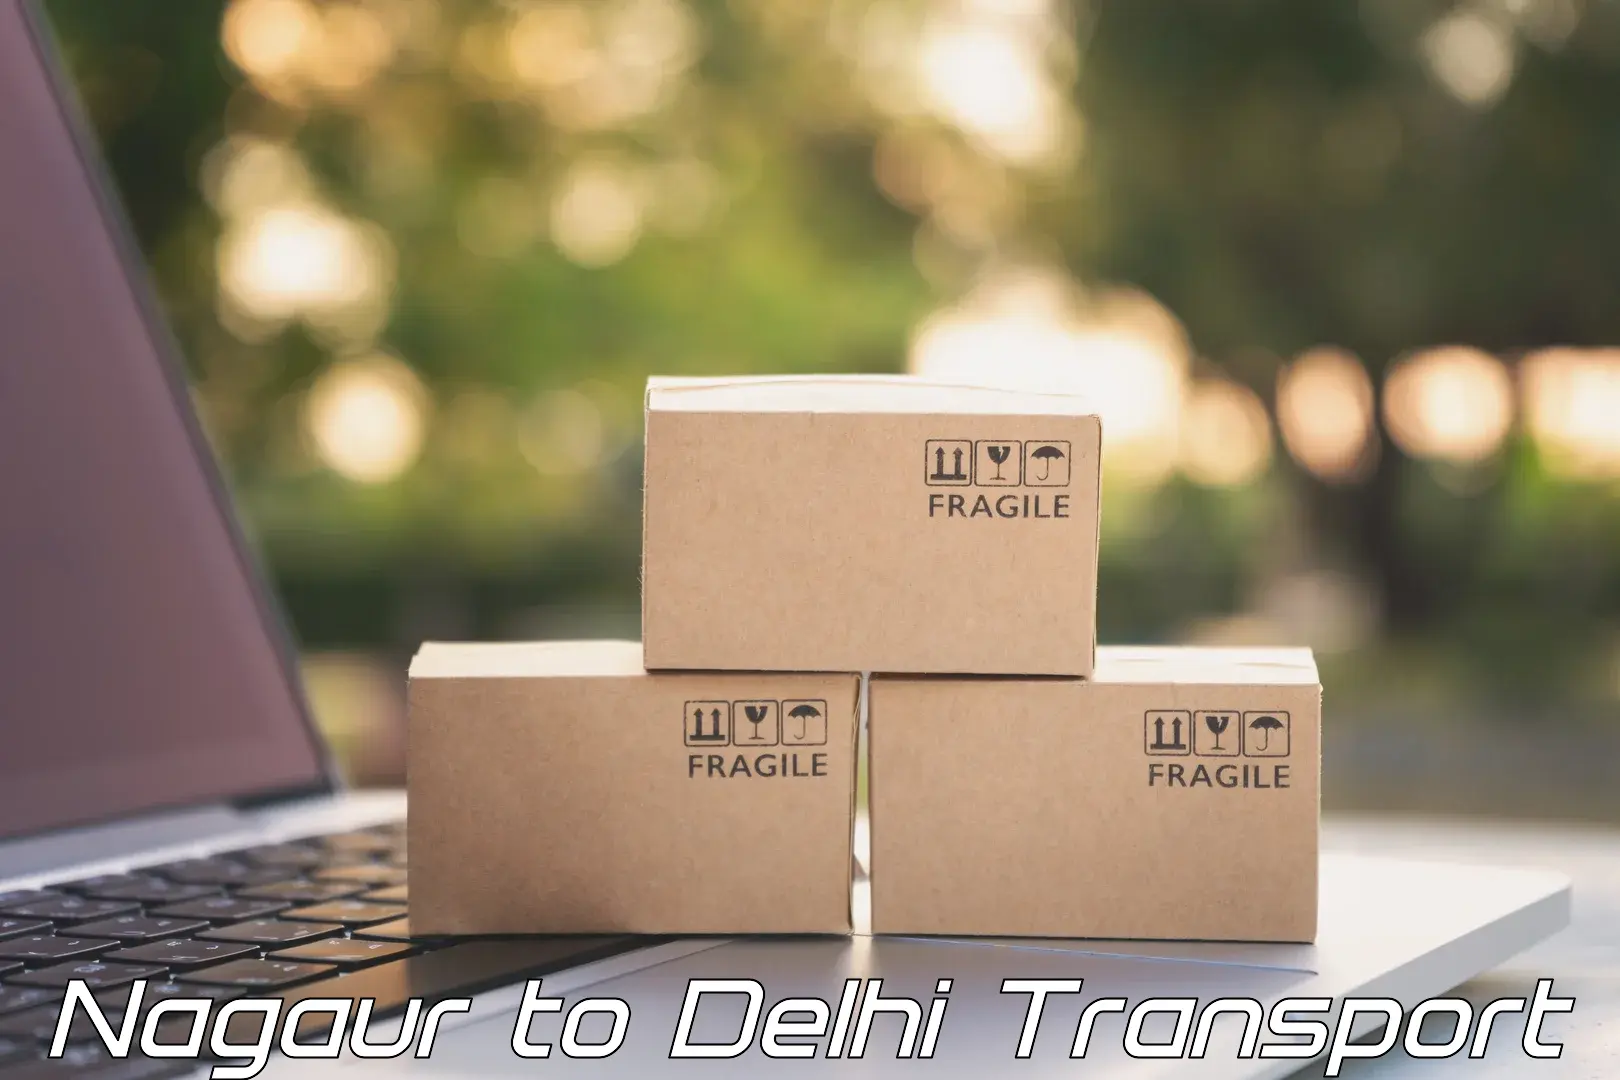 Parcel transport services Nagaur to Delhi Technological University DTU